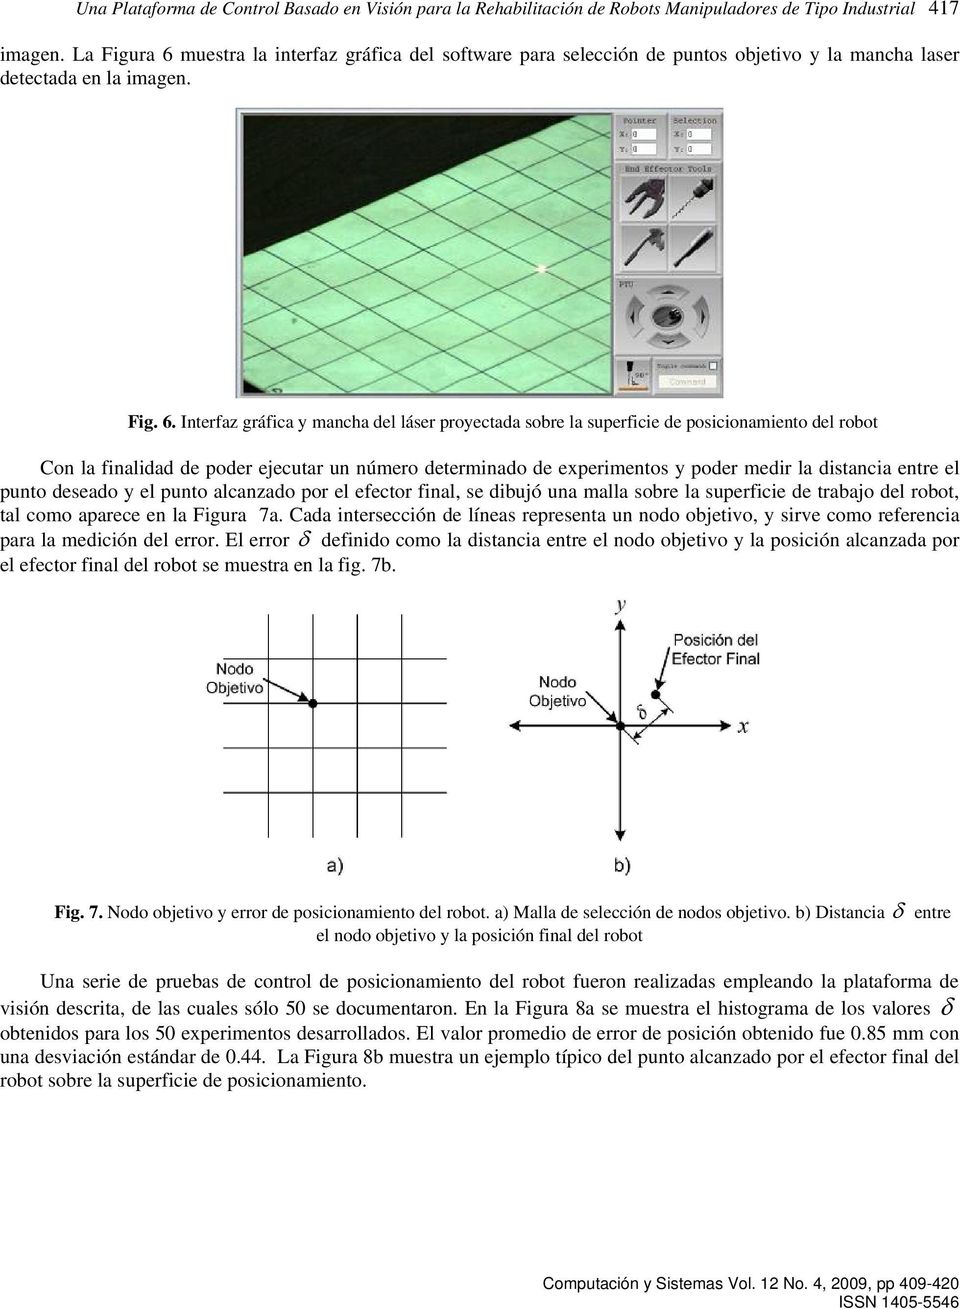 muestra la interfaz gráfica del software para selección de puntos objetivo y la mancha laser detectada en la imagen. Fig. 6.